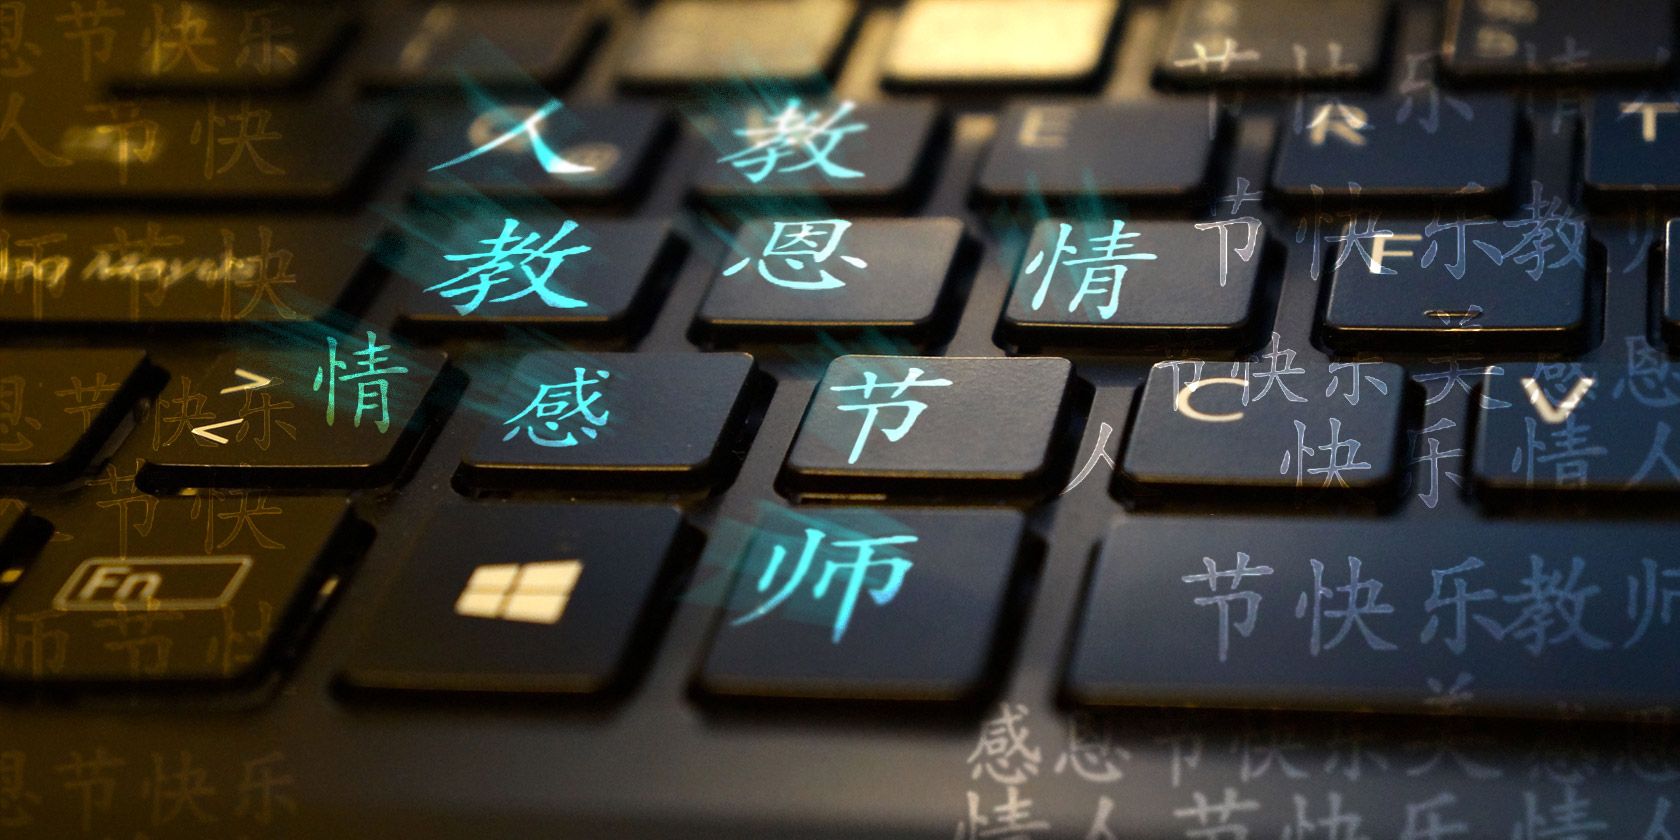 chinese typing program free